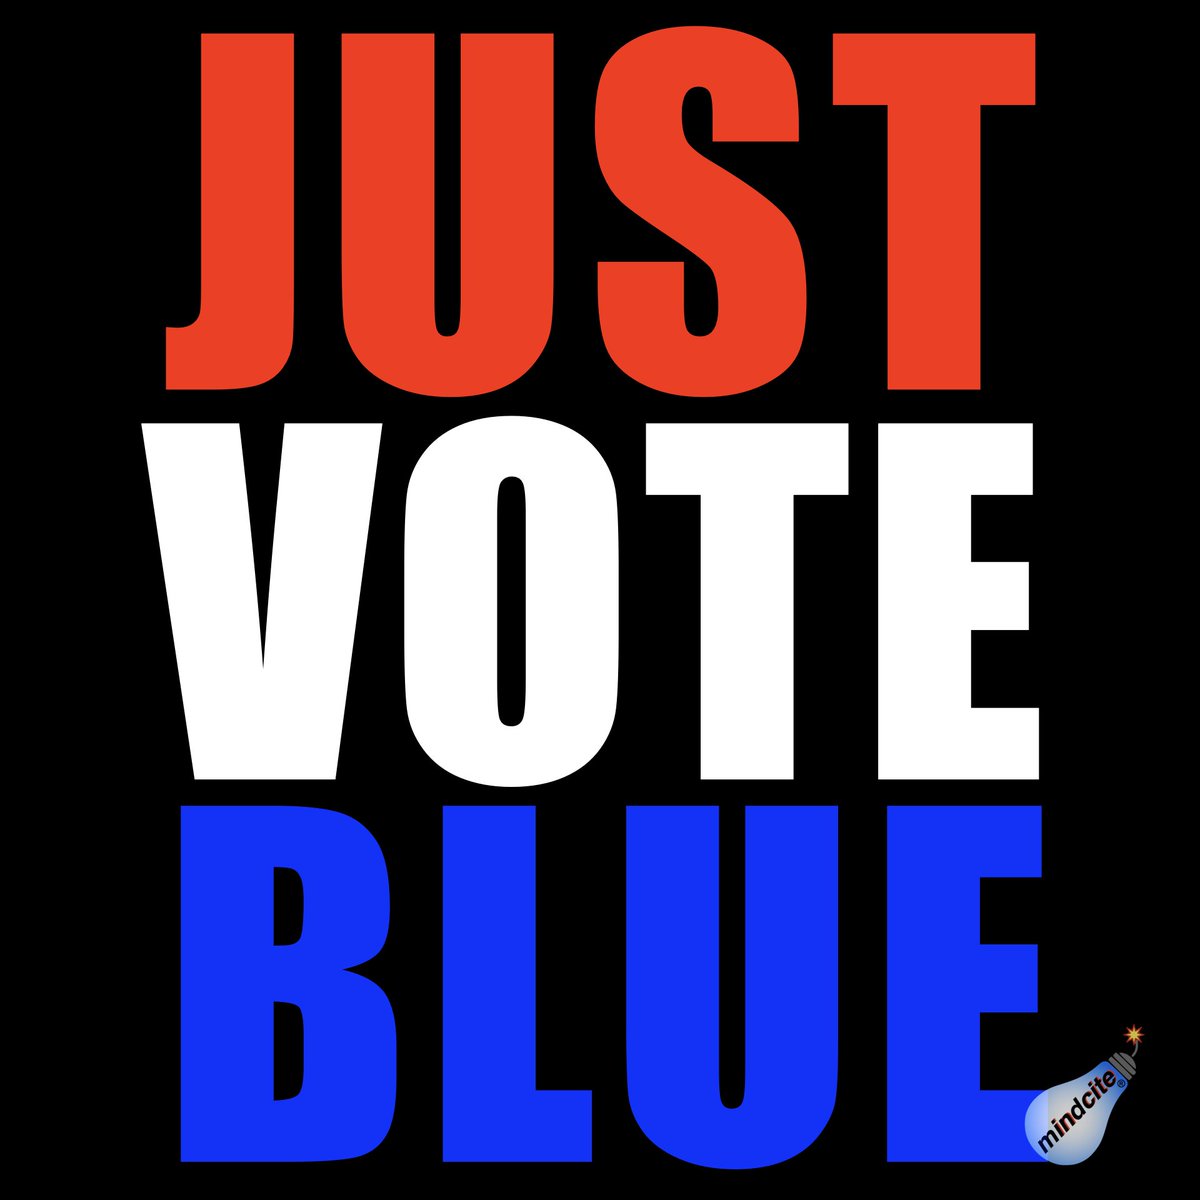 #VoteBlue 💙 #JustVoteBlue